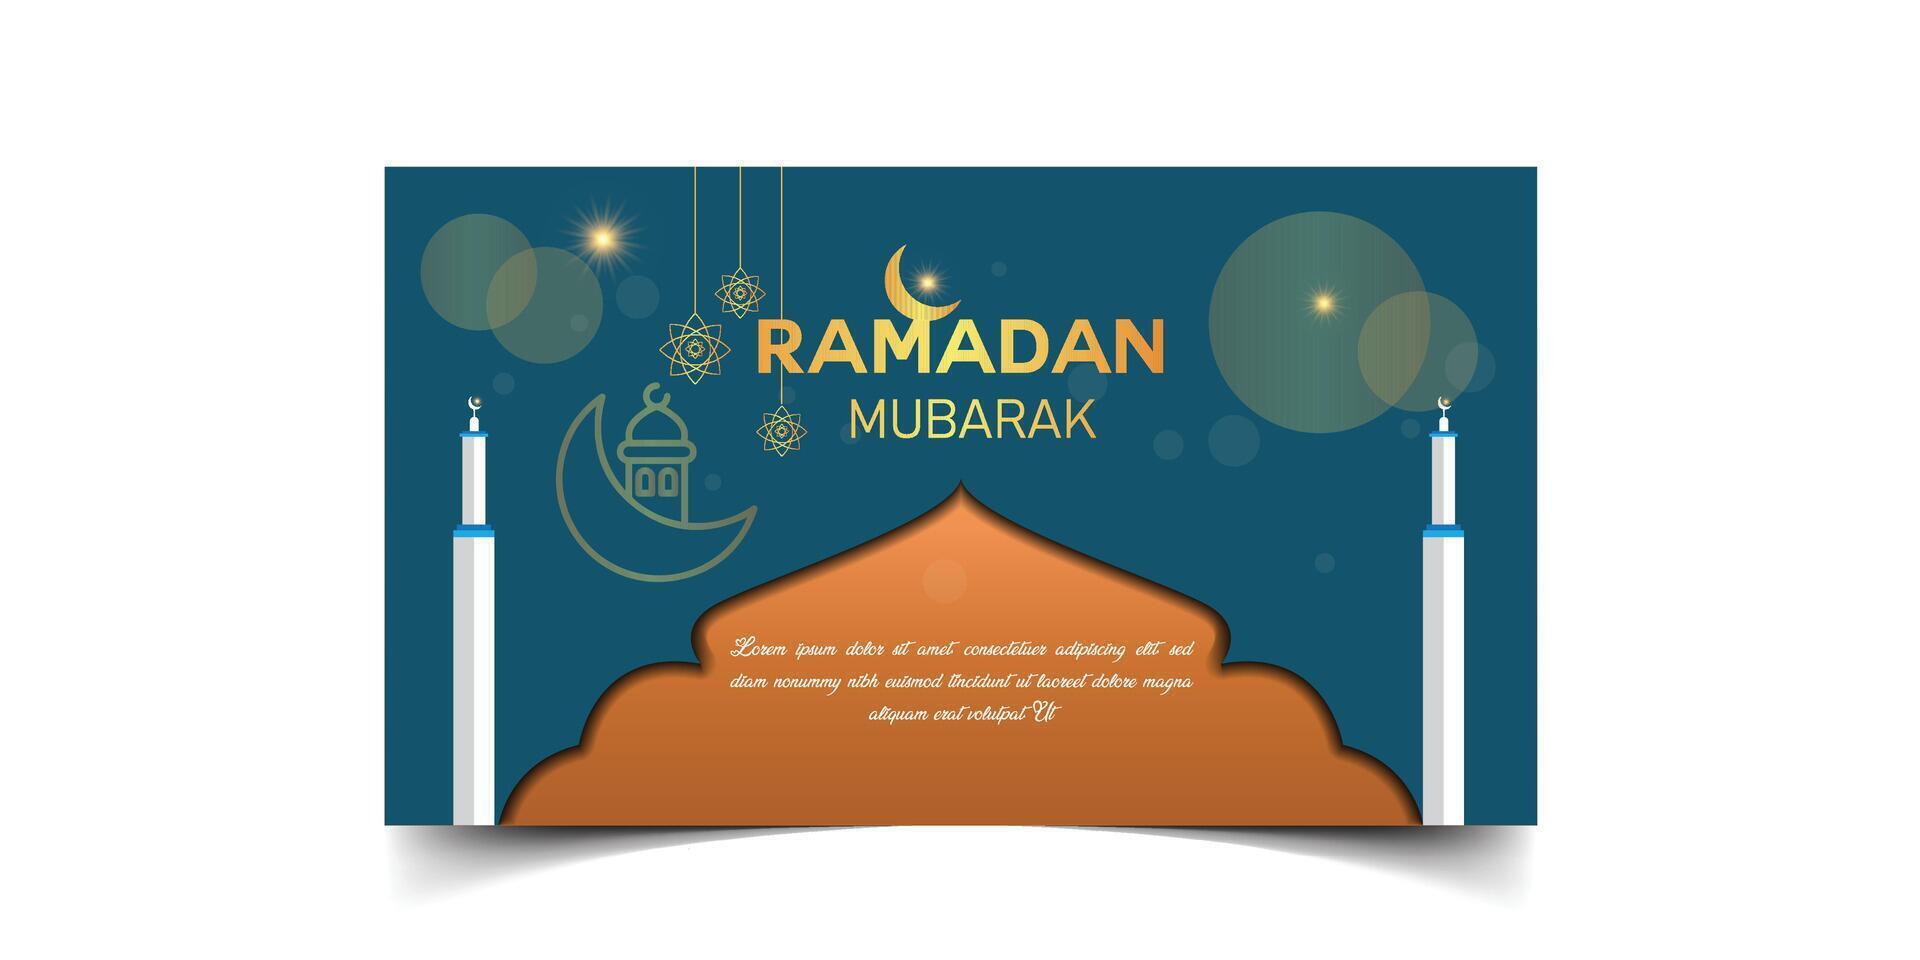 Ramadan Kareem Islamic festival celebration decorative background design vector